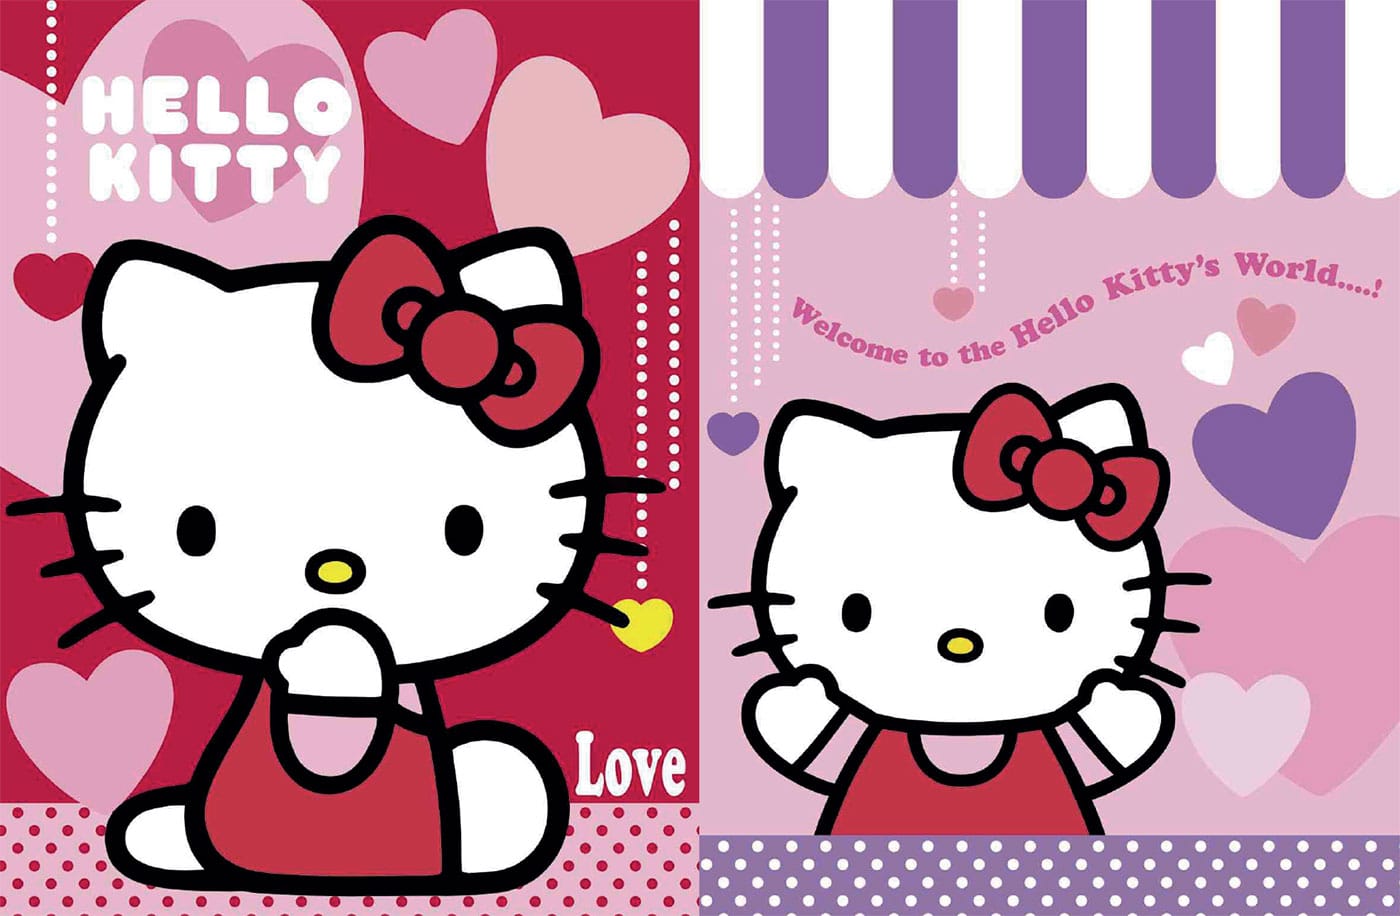 hello-kitty-love-agoefilo-collezione-gabriele-lakhal-00001